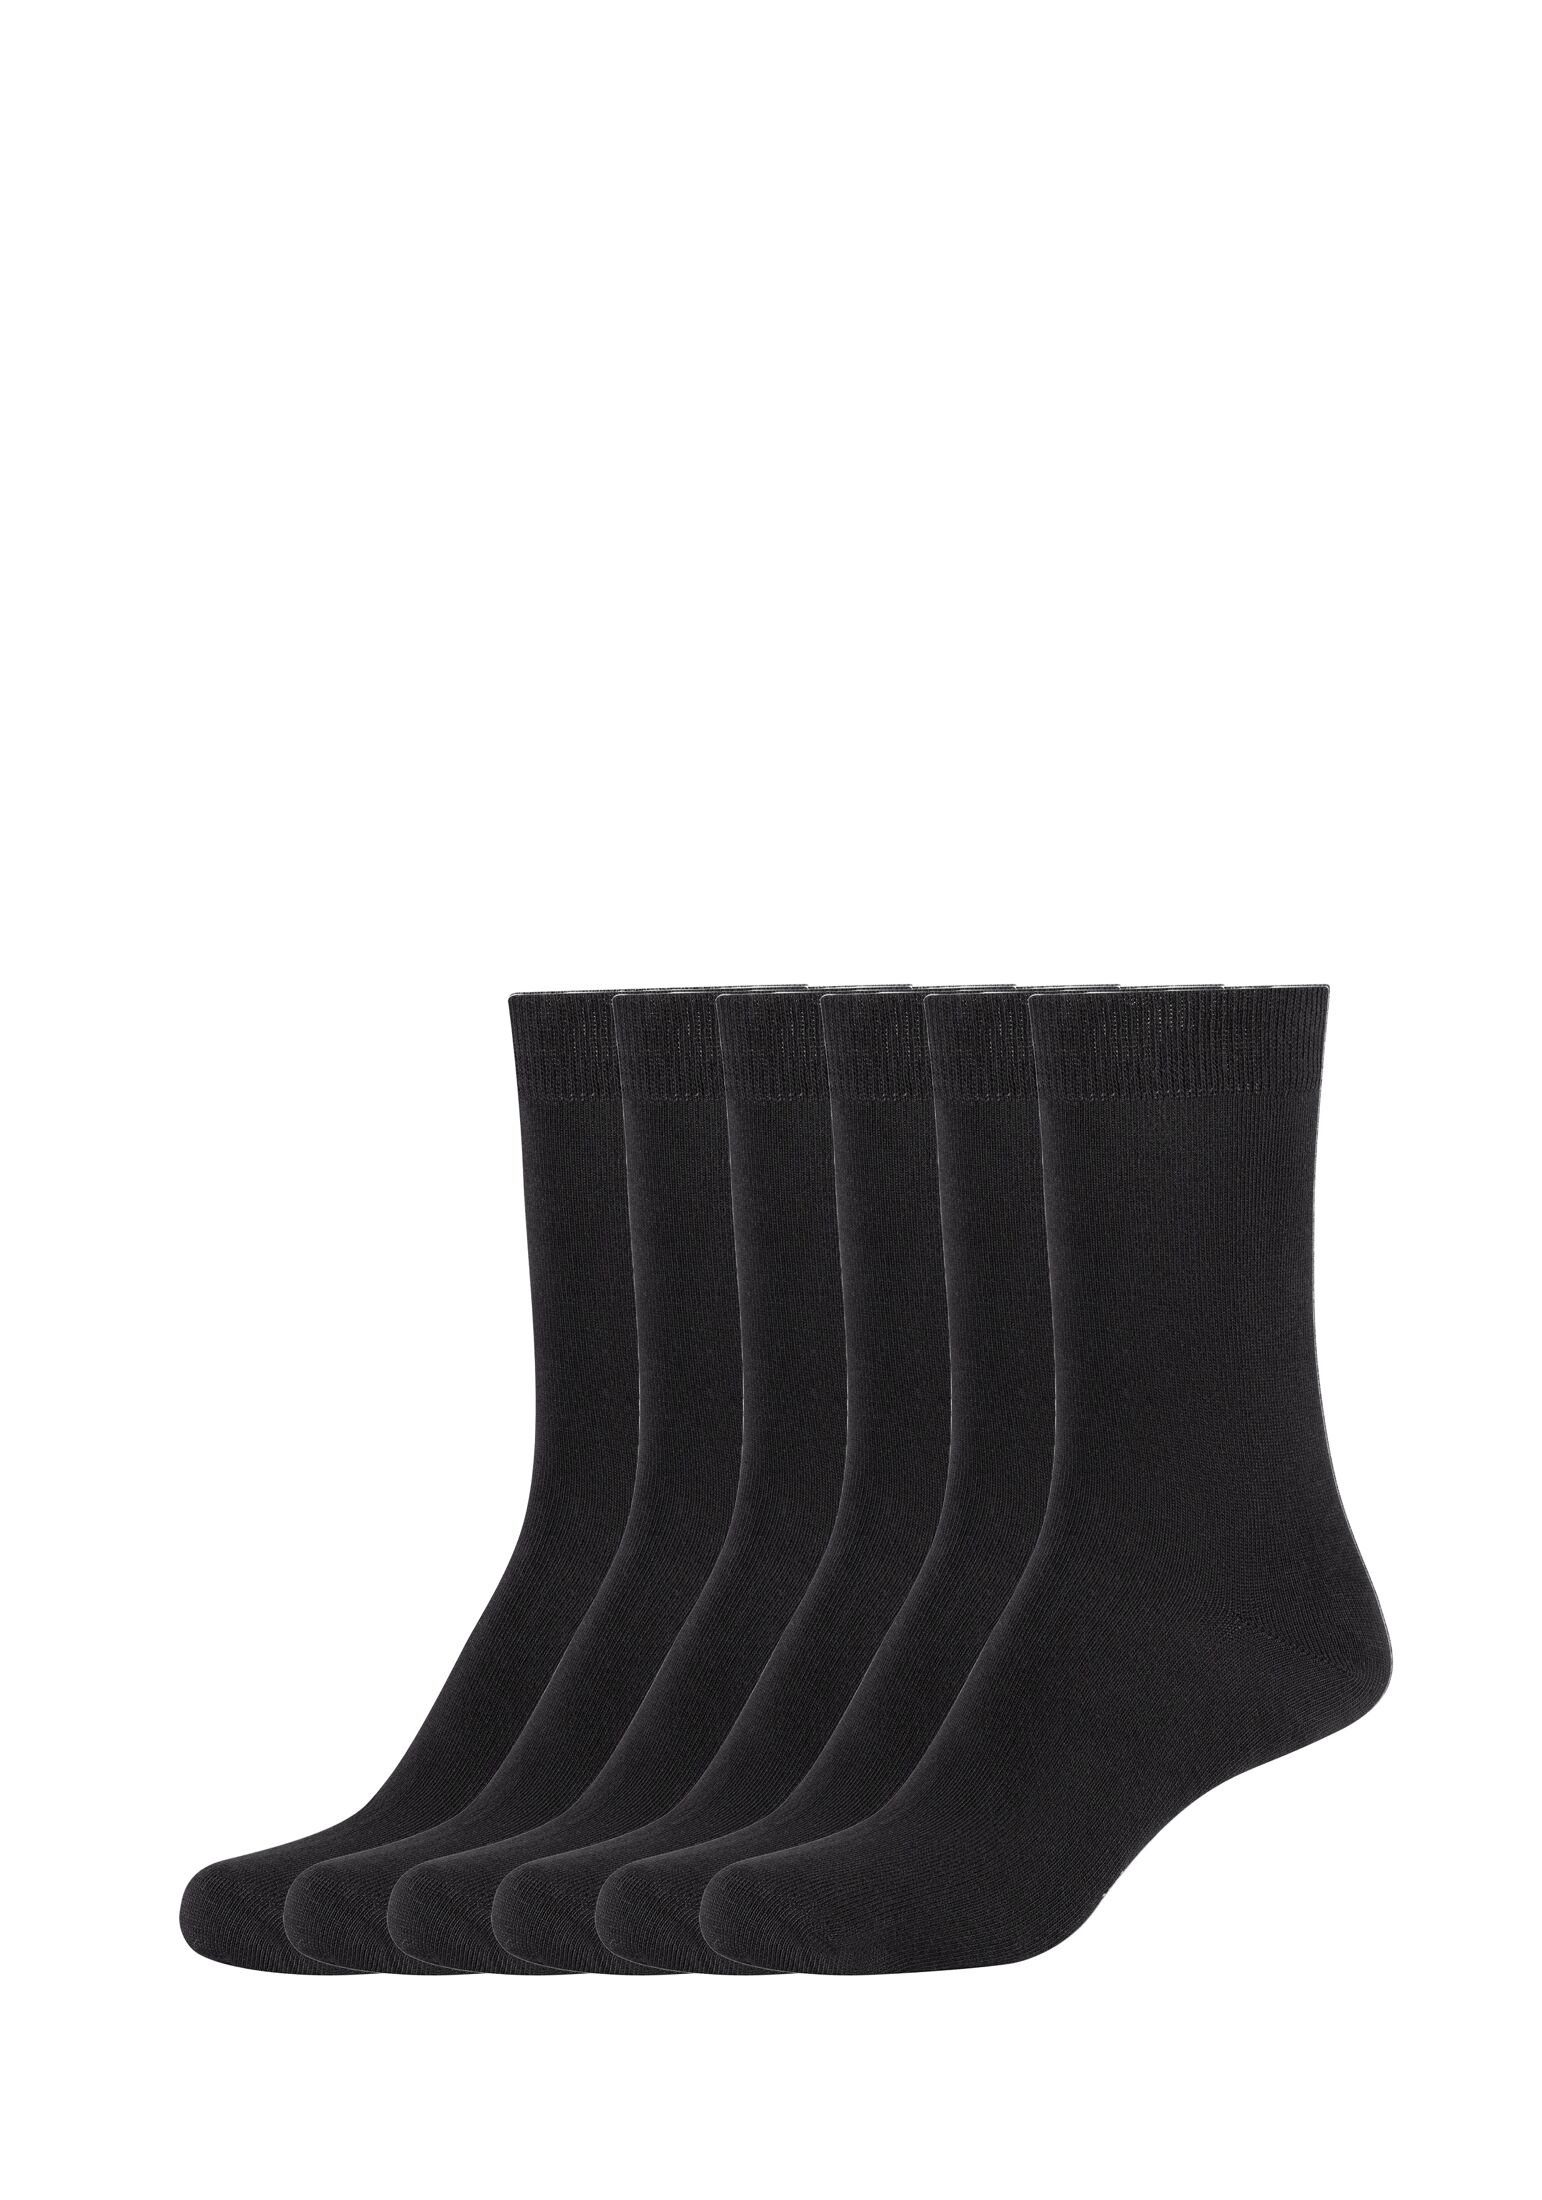 s.Oliver Socken Socken 6er Pack black